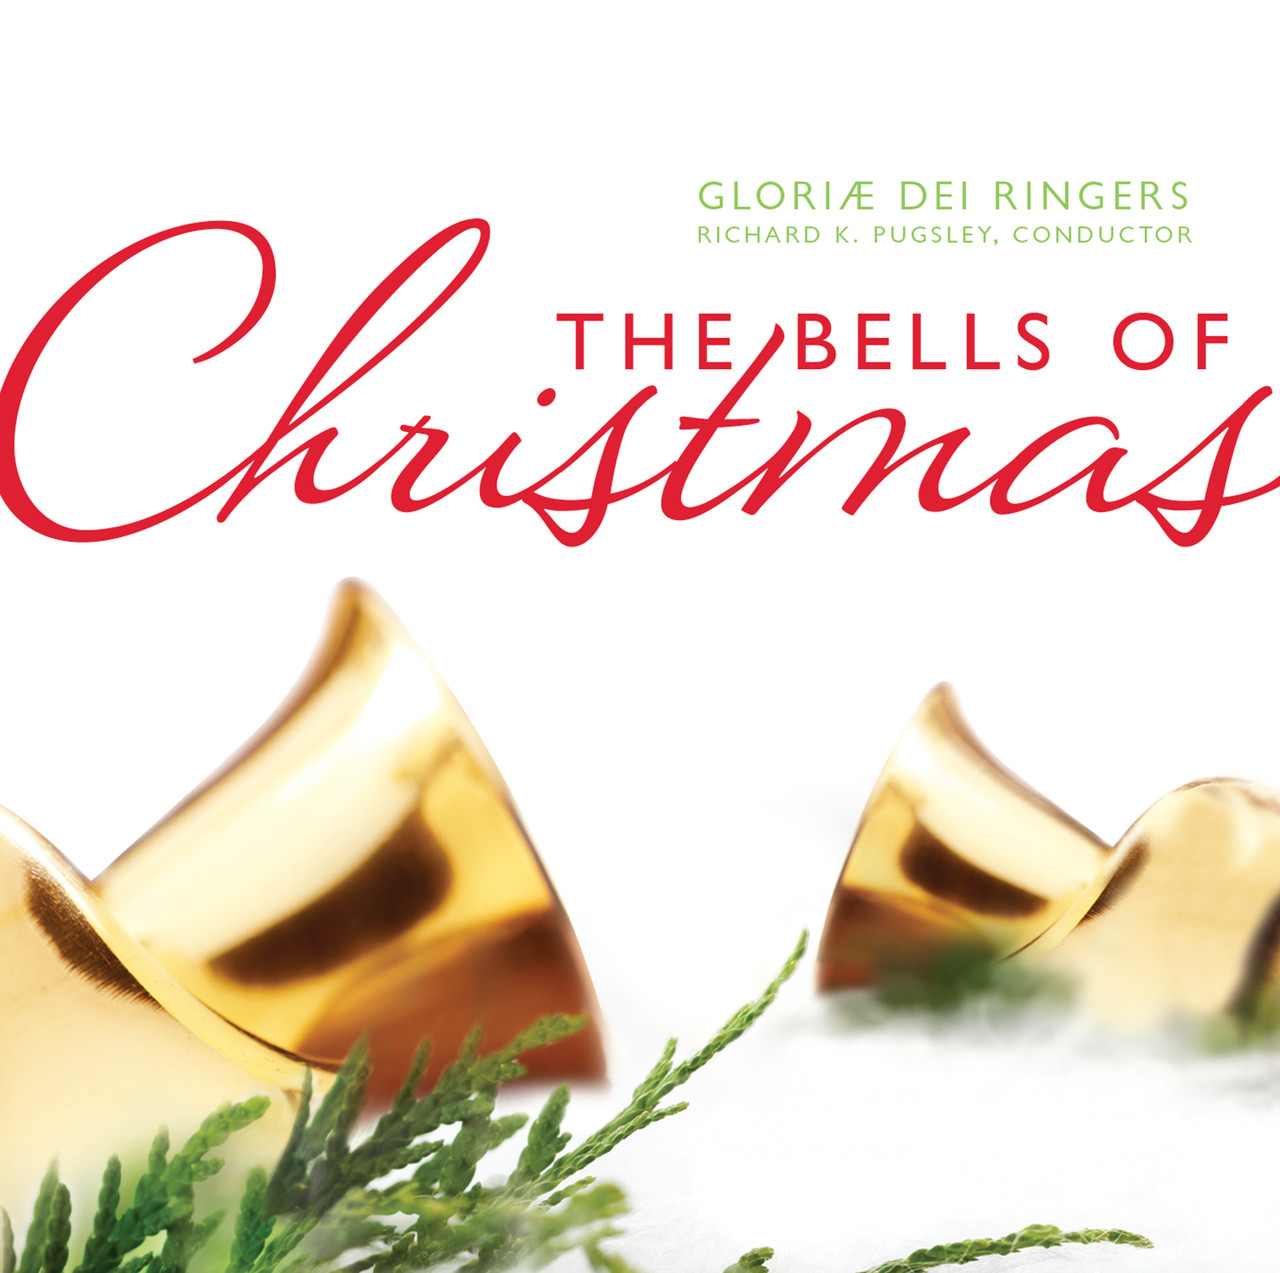 The Joyful Bells of Christmas